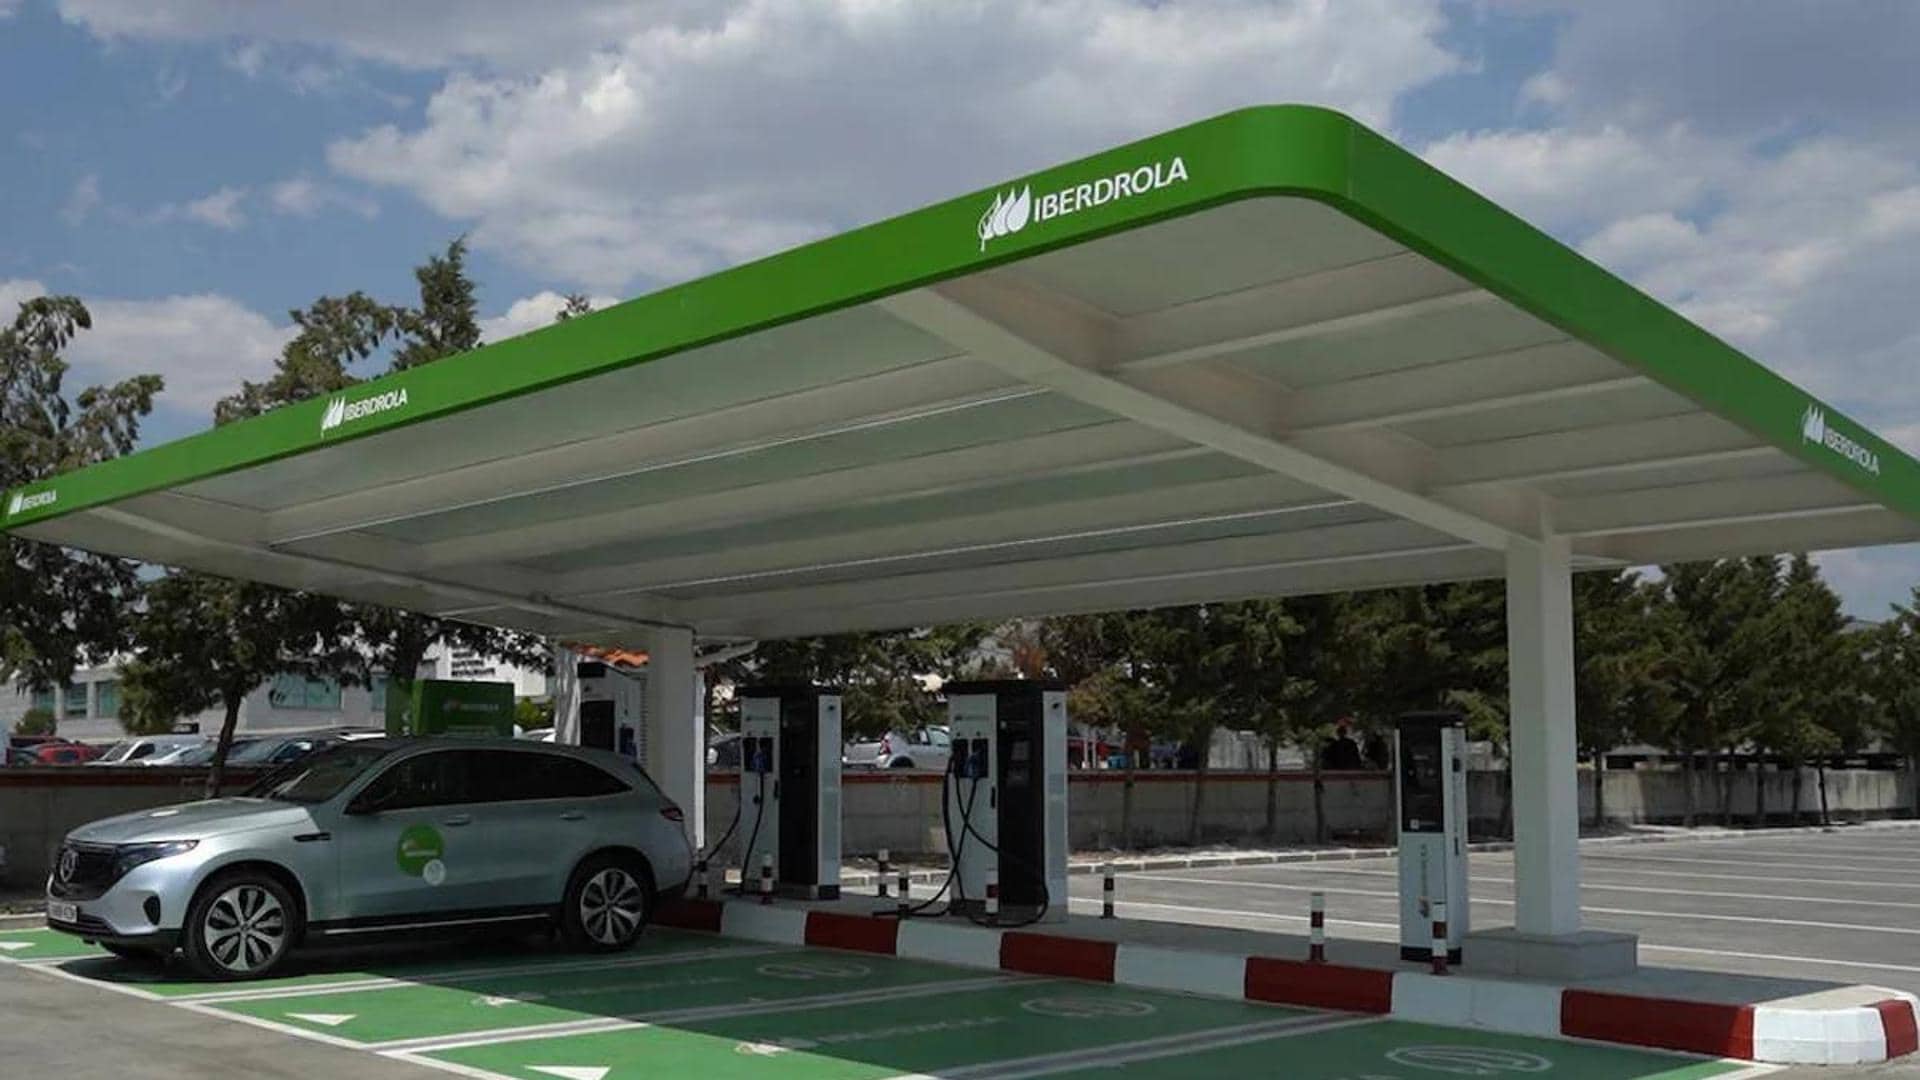 La energética Iberdrola alcanza los 7.000 puntos de recarga de vehículos eléctricos en España